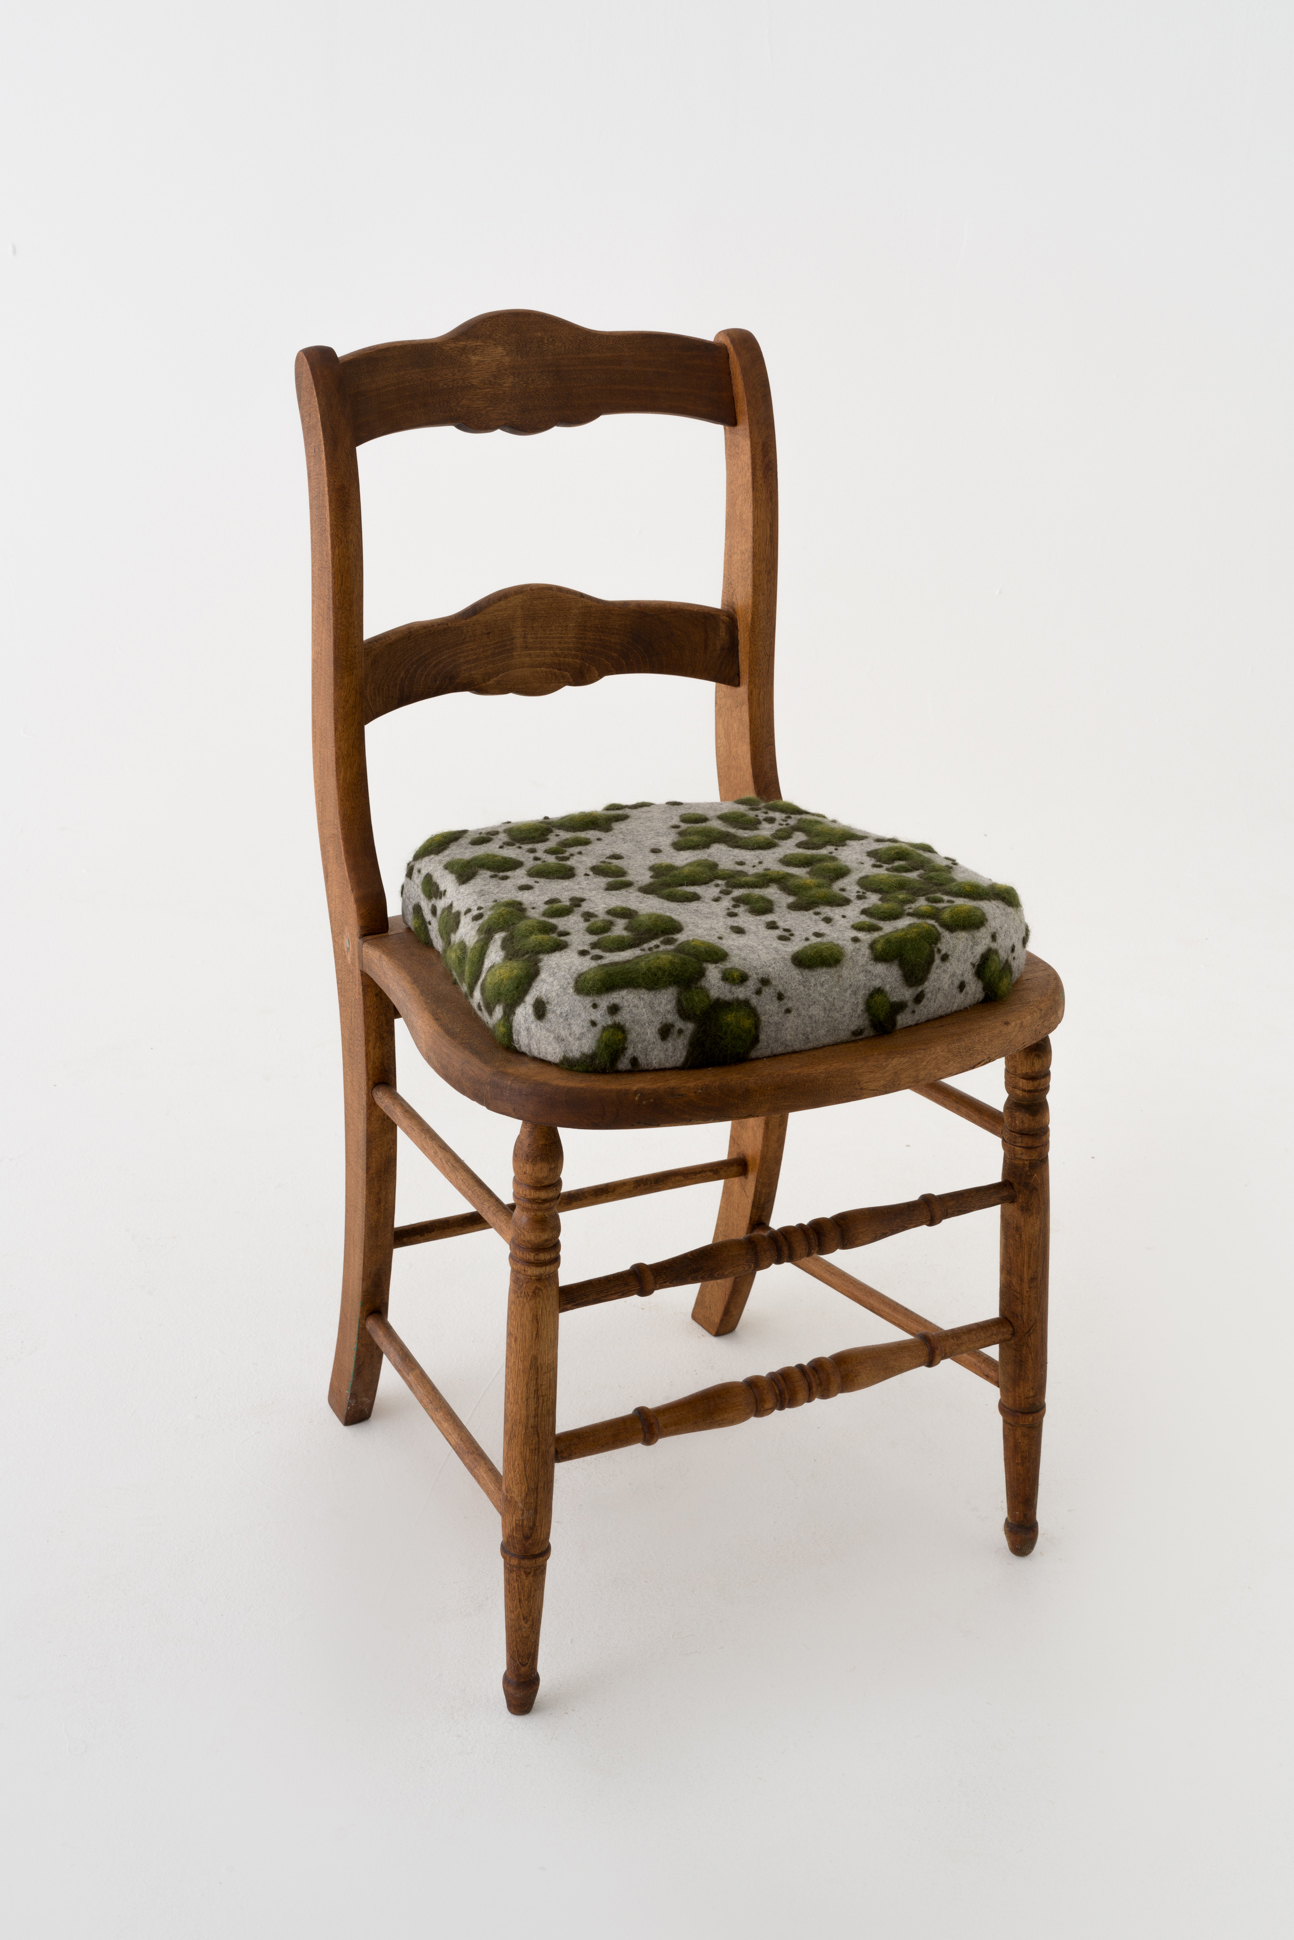 Moss Chair